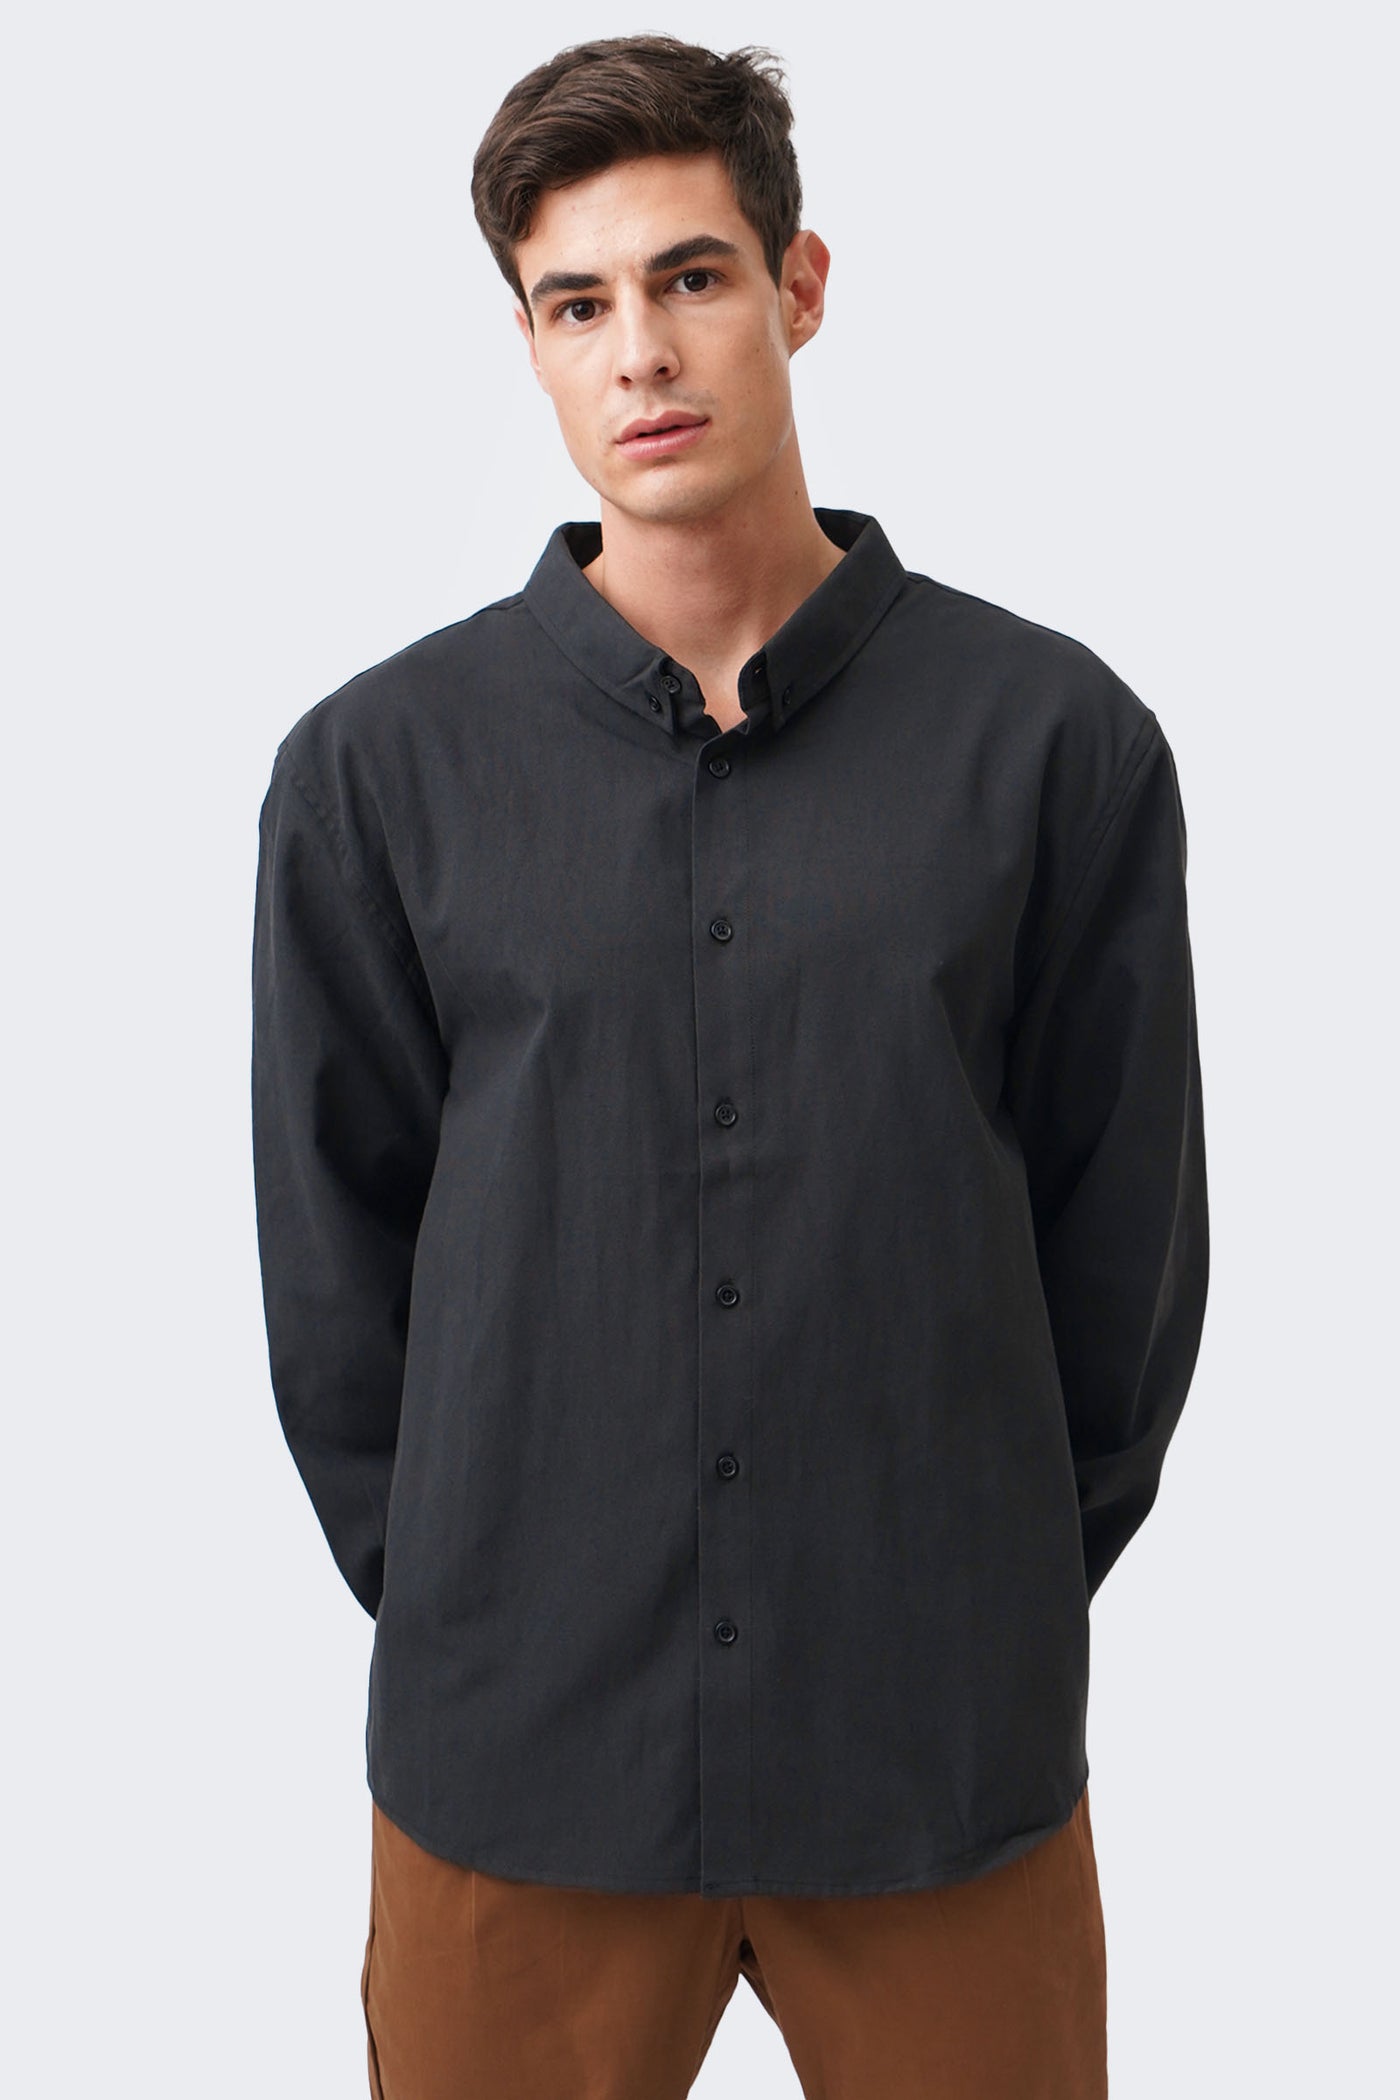 Men's Buttondown Long Sleeve Shirt - The New Standard